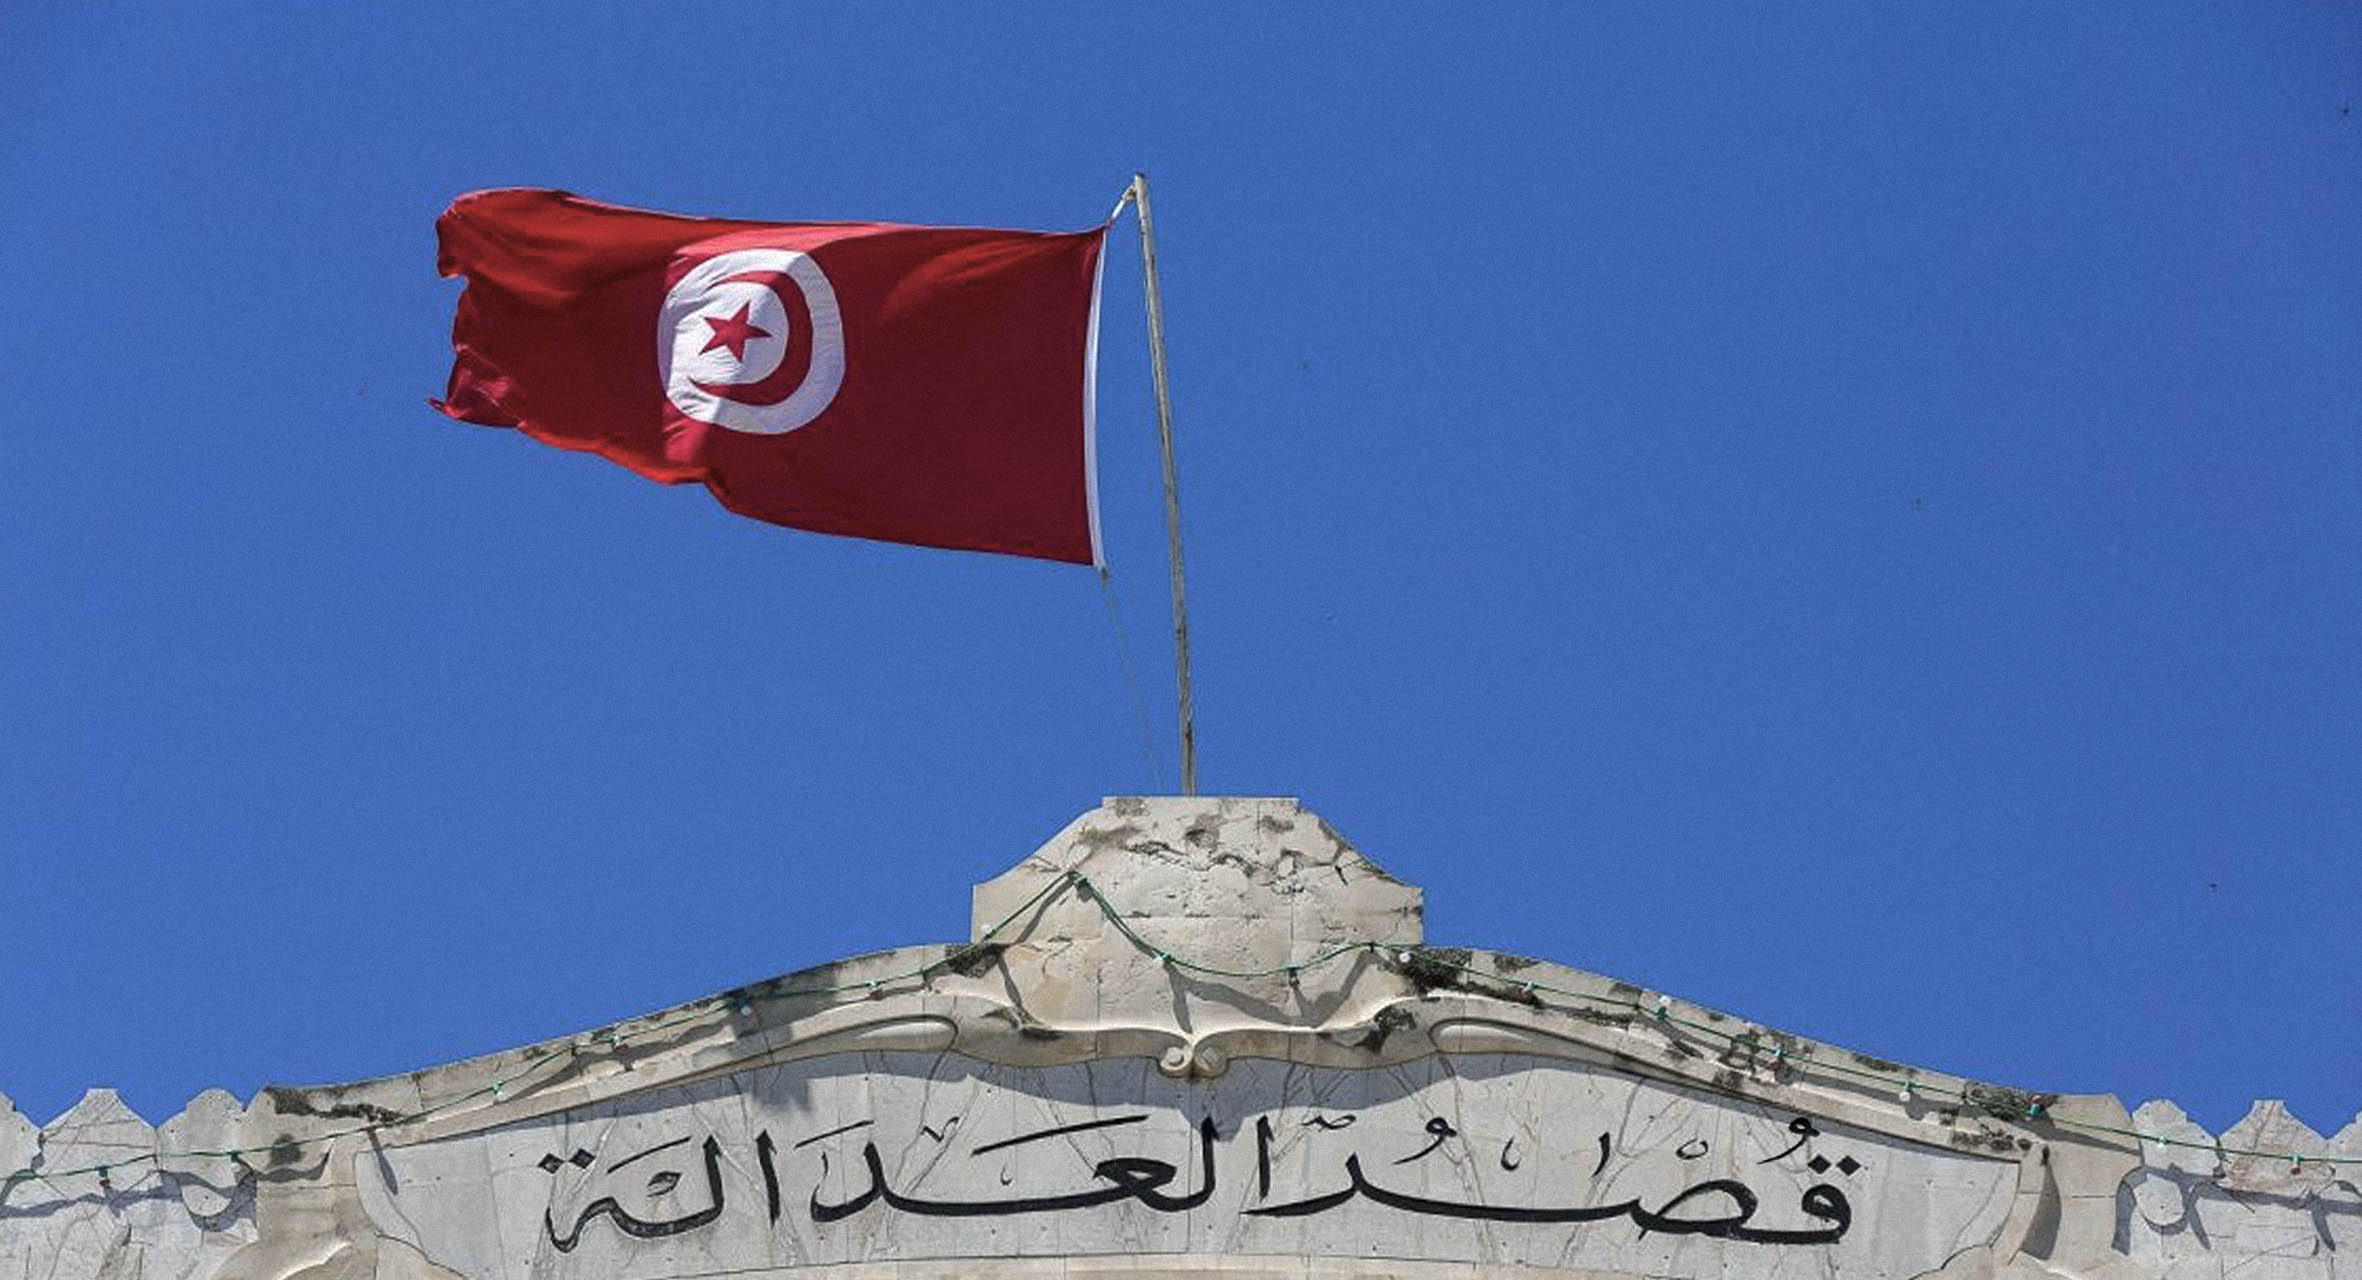 صورة تونس: الحكم ٣٠ عاماً على شباب دخّنوا الحشيش في ممتلكات عامة بدلاً من سرقتها وبيعها وتقاسم ثمنها